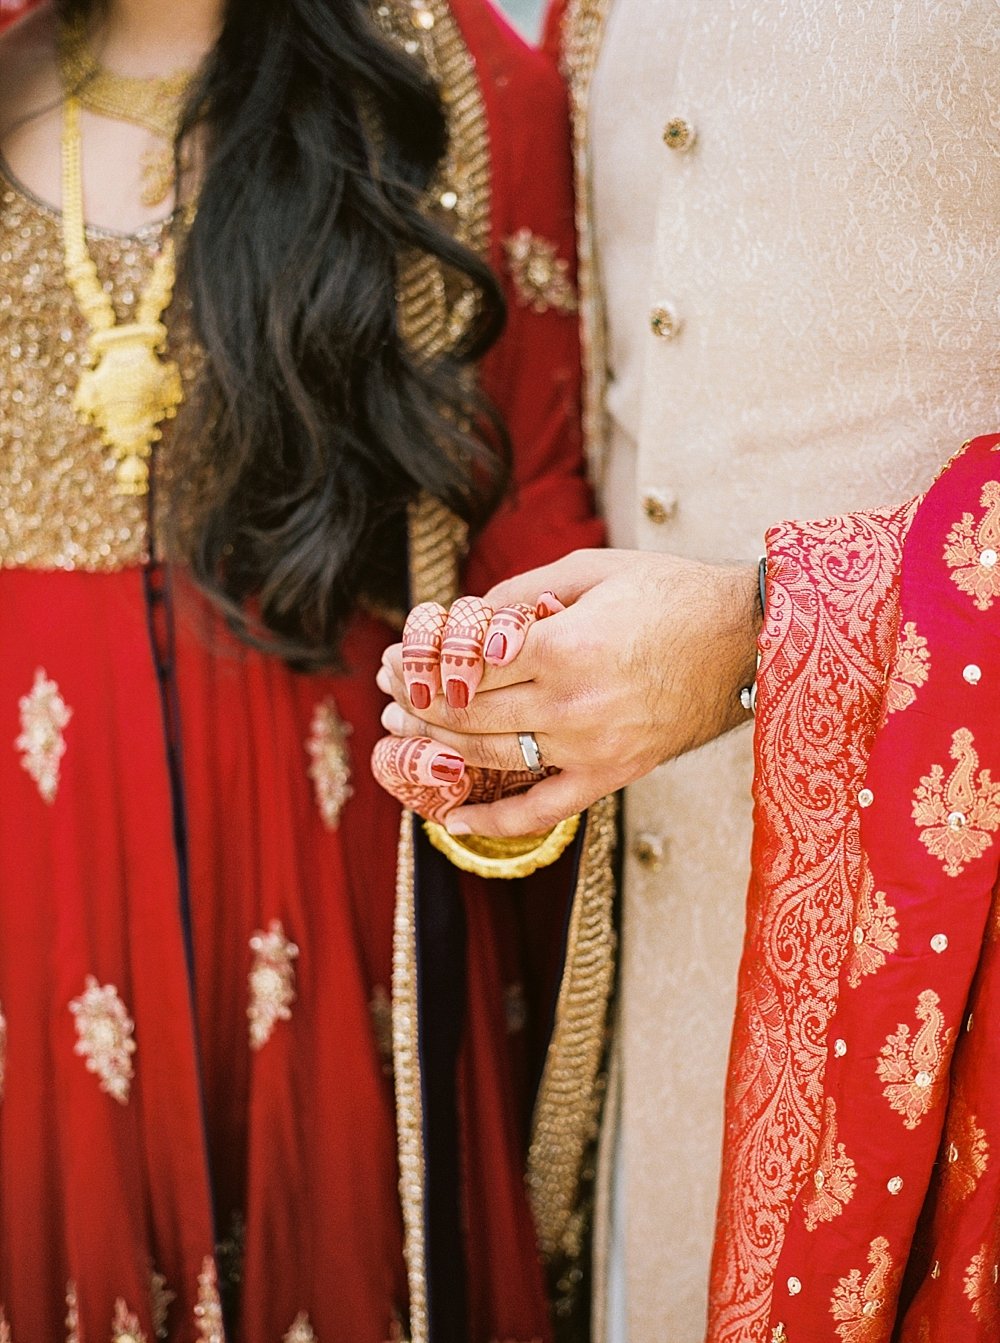 Indian Wedding Hilton Bonnet Creek Waldorf Astoria Orlando FL - Portra 400 - Film Photography | Ashley Holstein Photography #indianwedding #hands